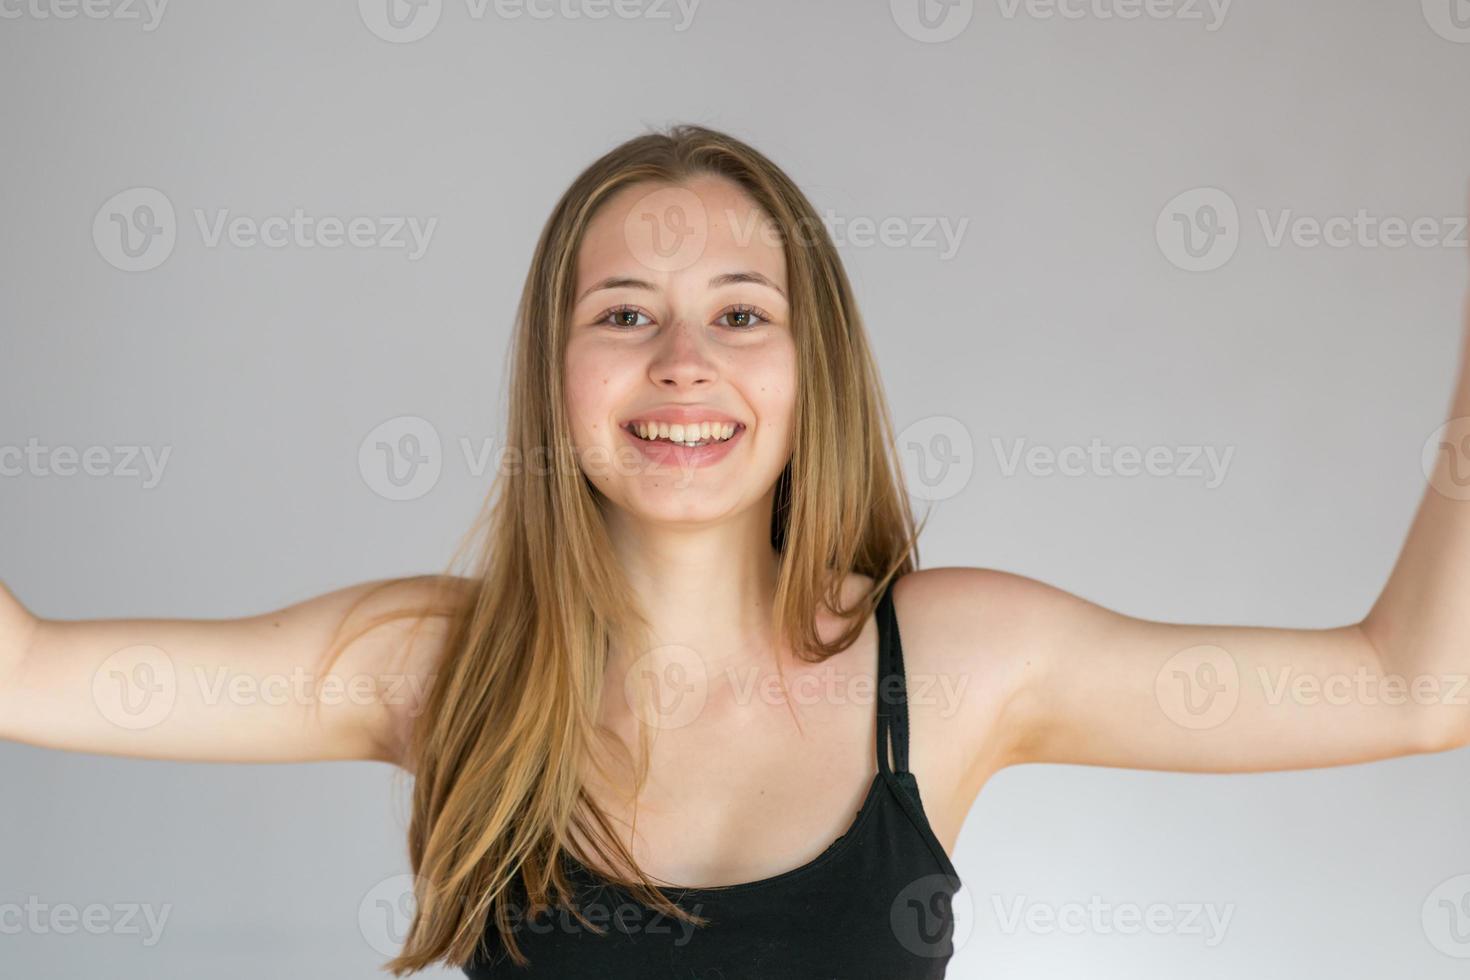 retrato de estúdio de uma jovem sorridente posando sobre um fundo cinza, mostrando suas axilas depiladas foto